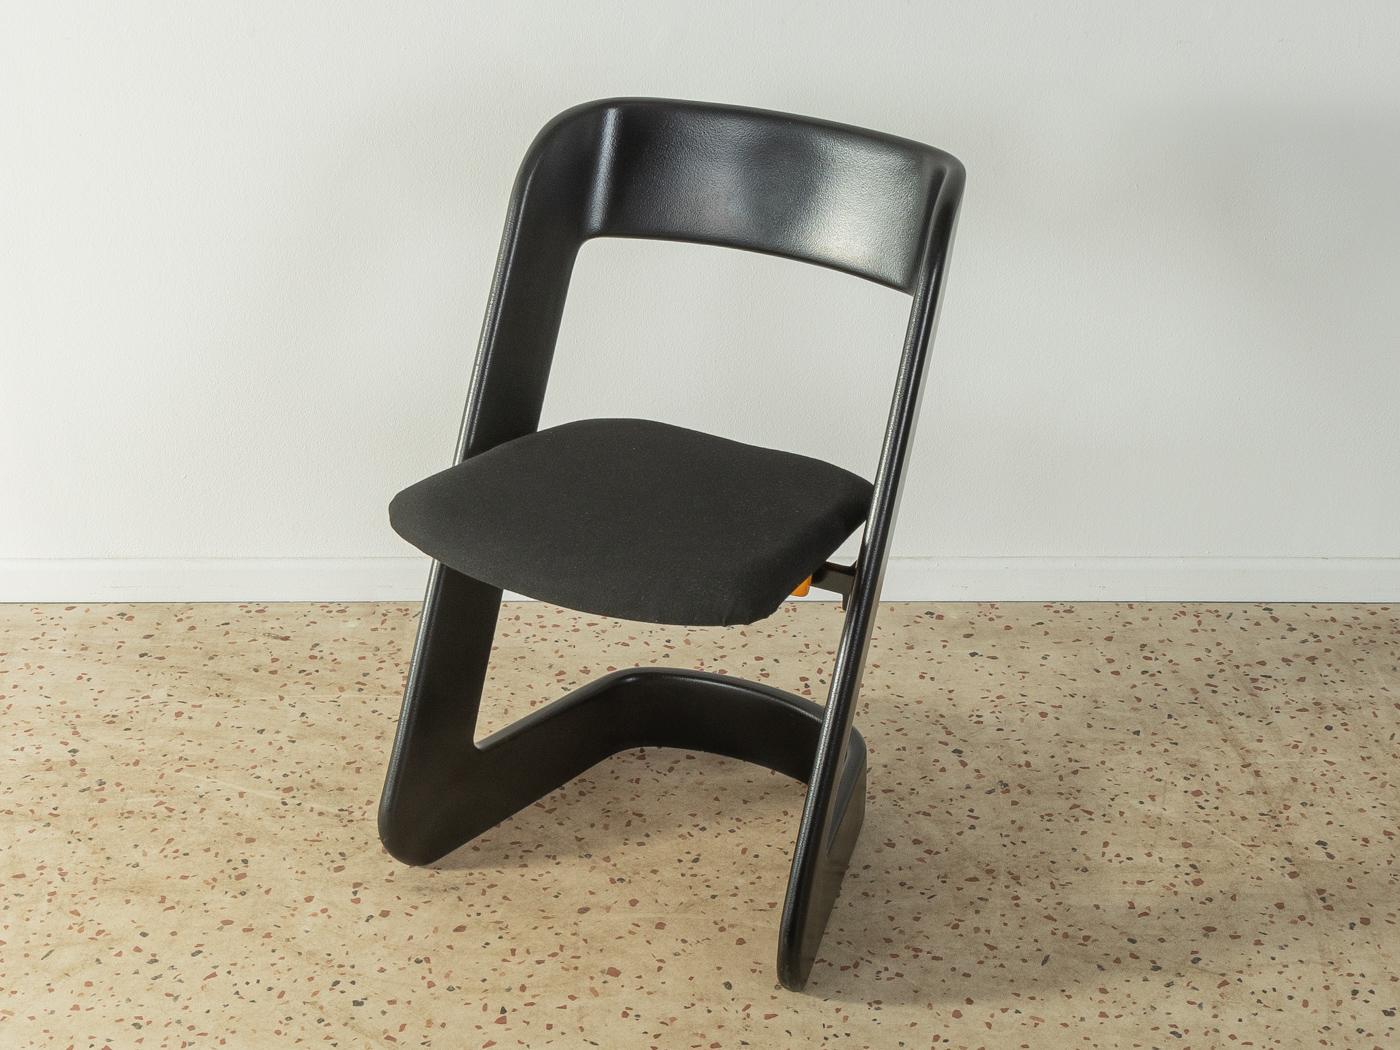 Rares chaises Lucy conçues par Peter Ghyczy et fabriquées par Elastogran GmbH dans les années 1960. Structure incurvée en polyuréthane avec une assise en plastique Foldes avec un nouveau revêtement noir. L'offre comprend 4 chaises.

Caractéristiques